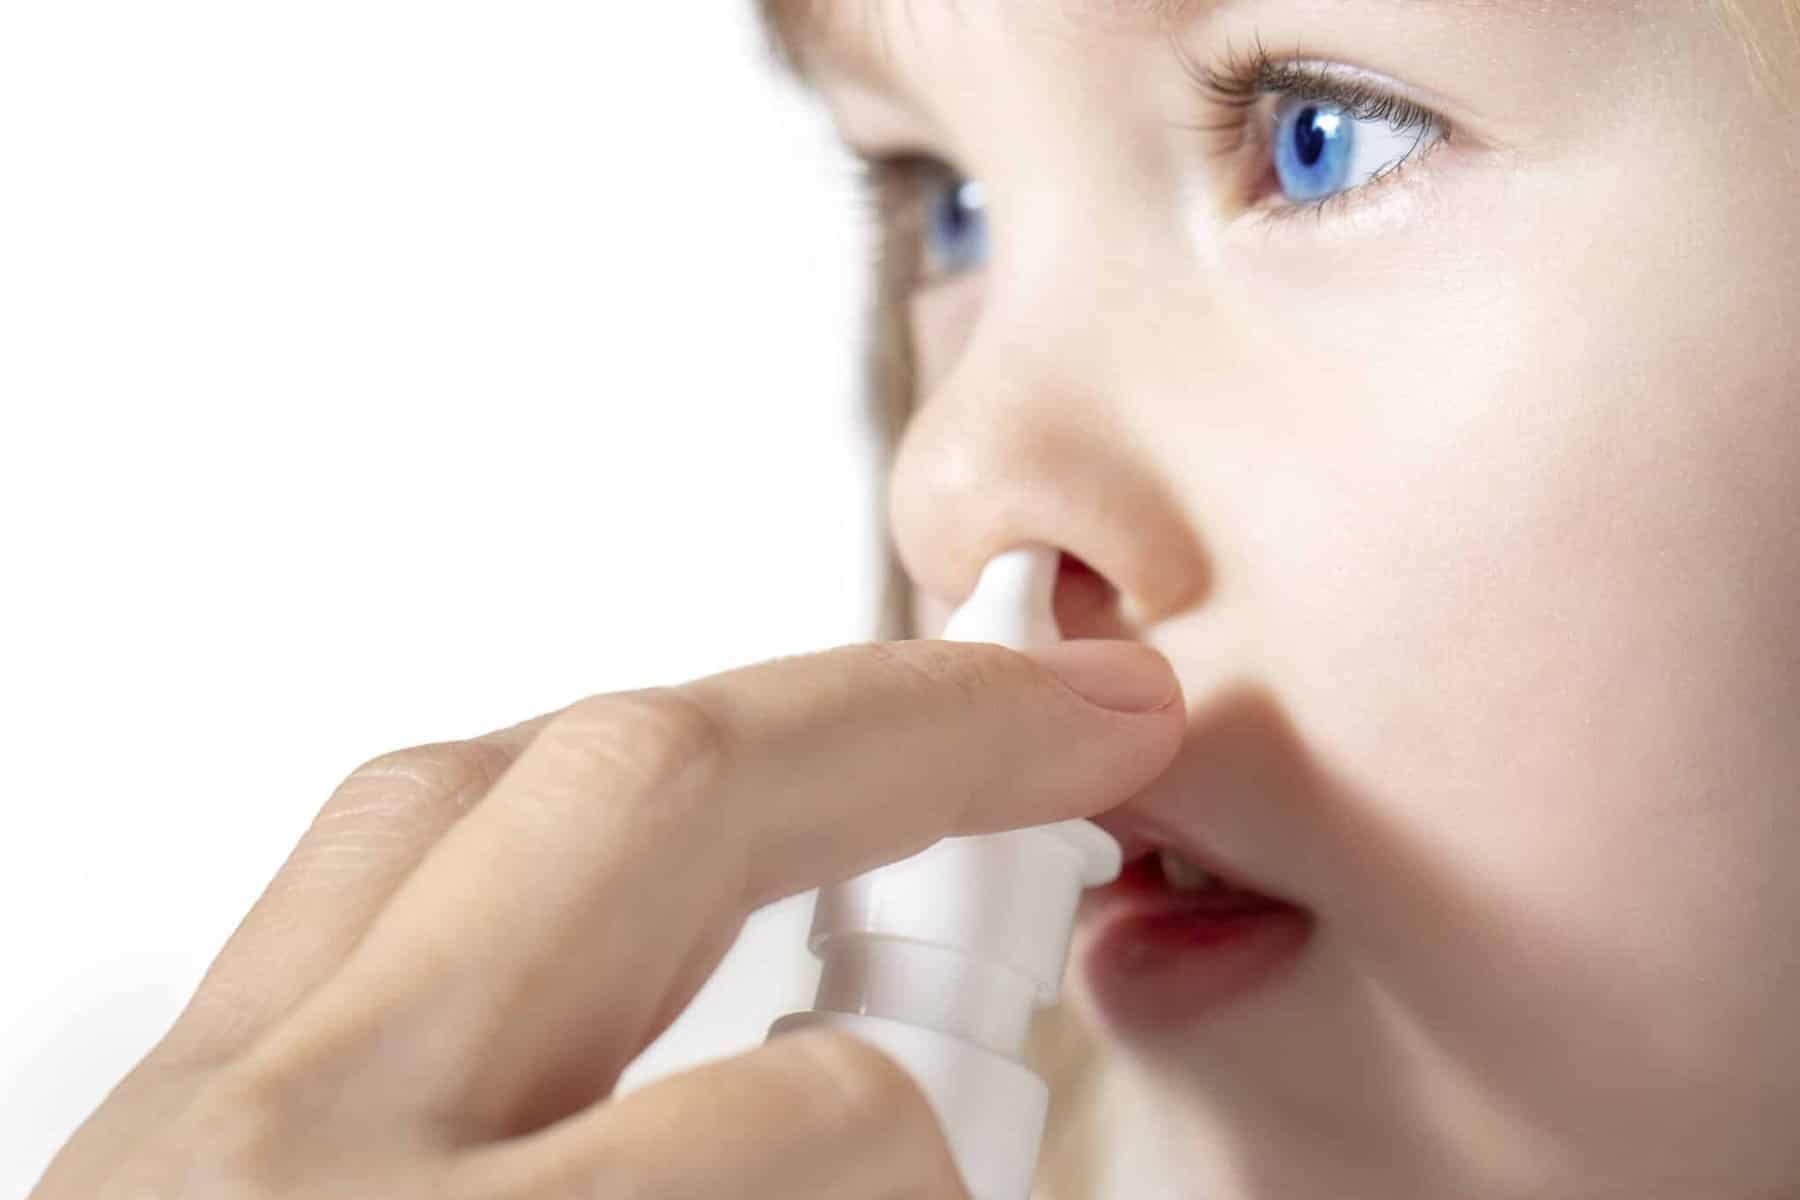 Erkältung: Rezeptfreie Medikamente nicht unbedingt für Kinder geeignet